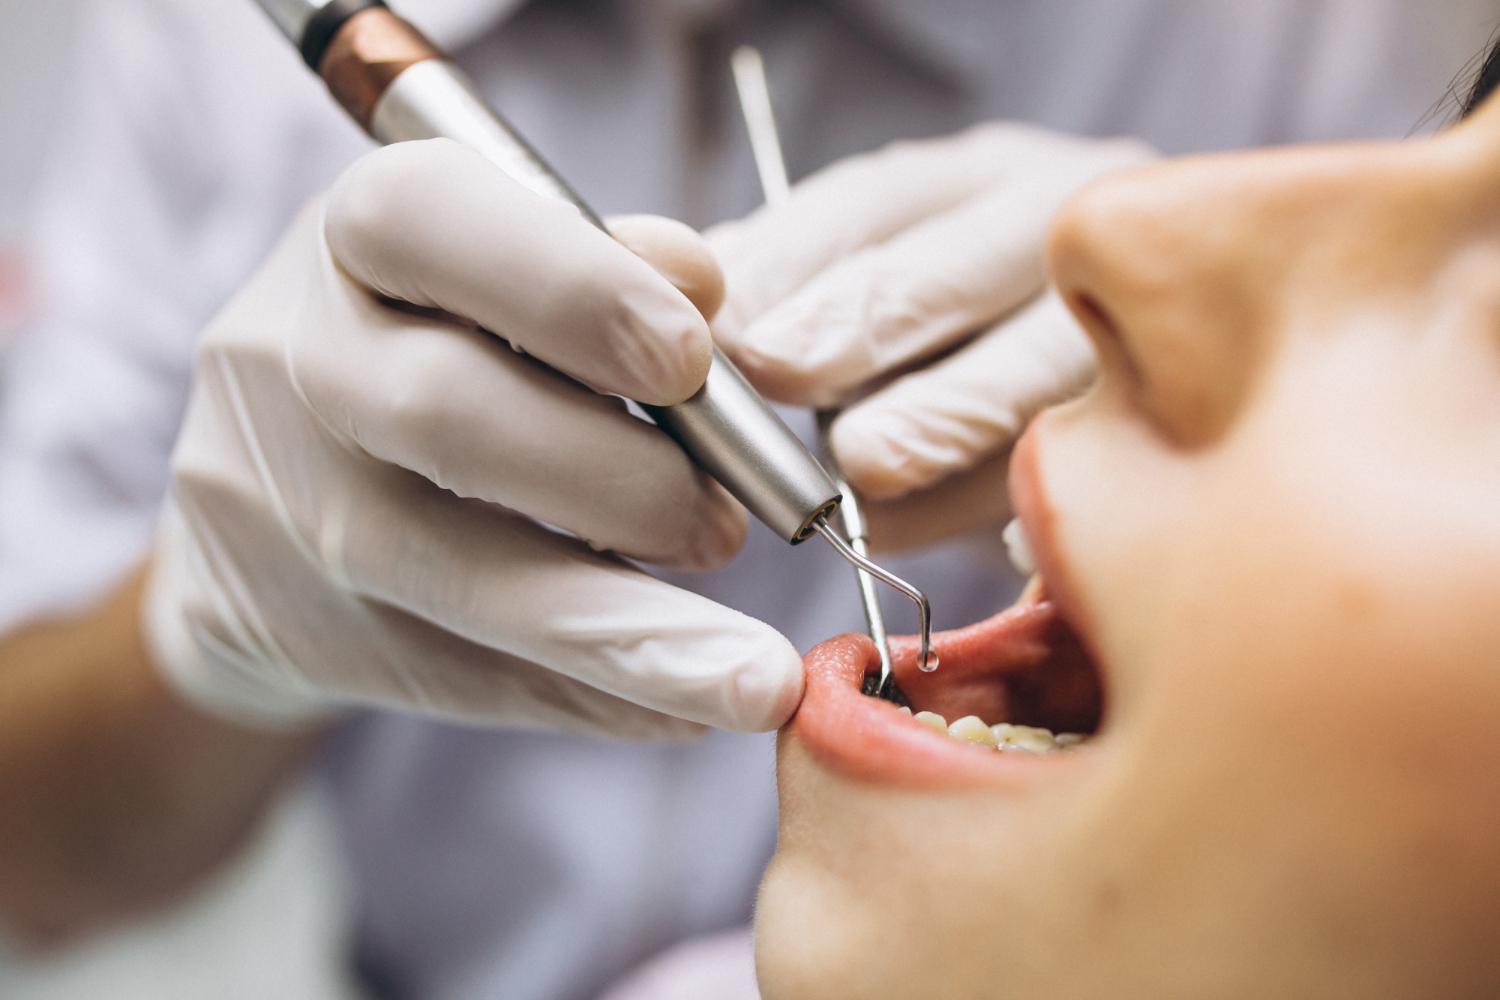 מה שצריך לדעת על טיפולי שיניים ובריאות הפה